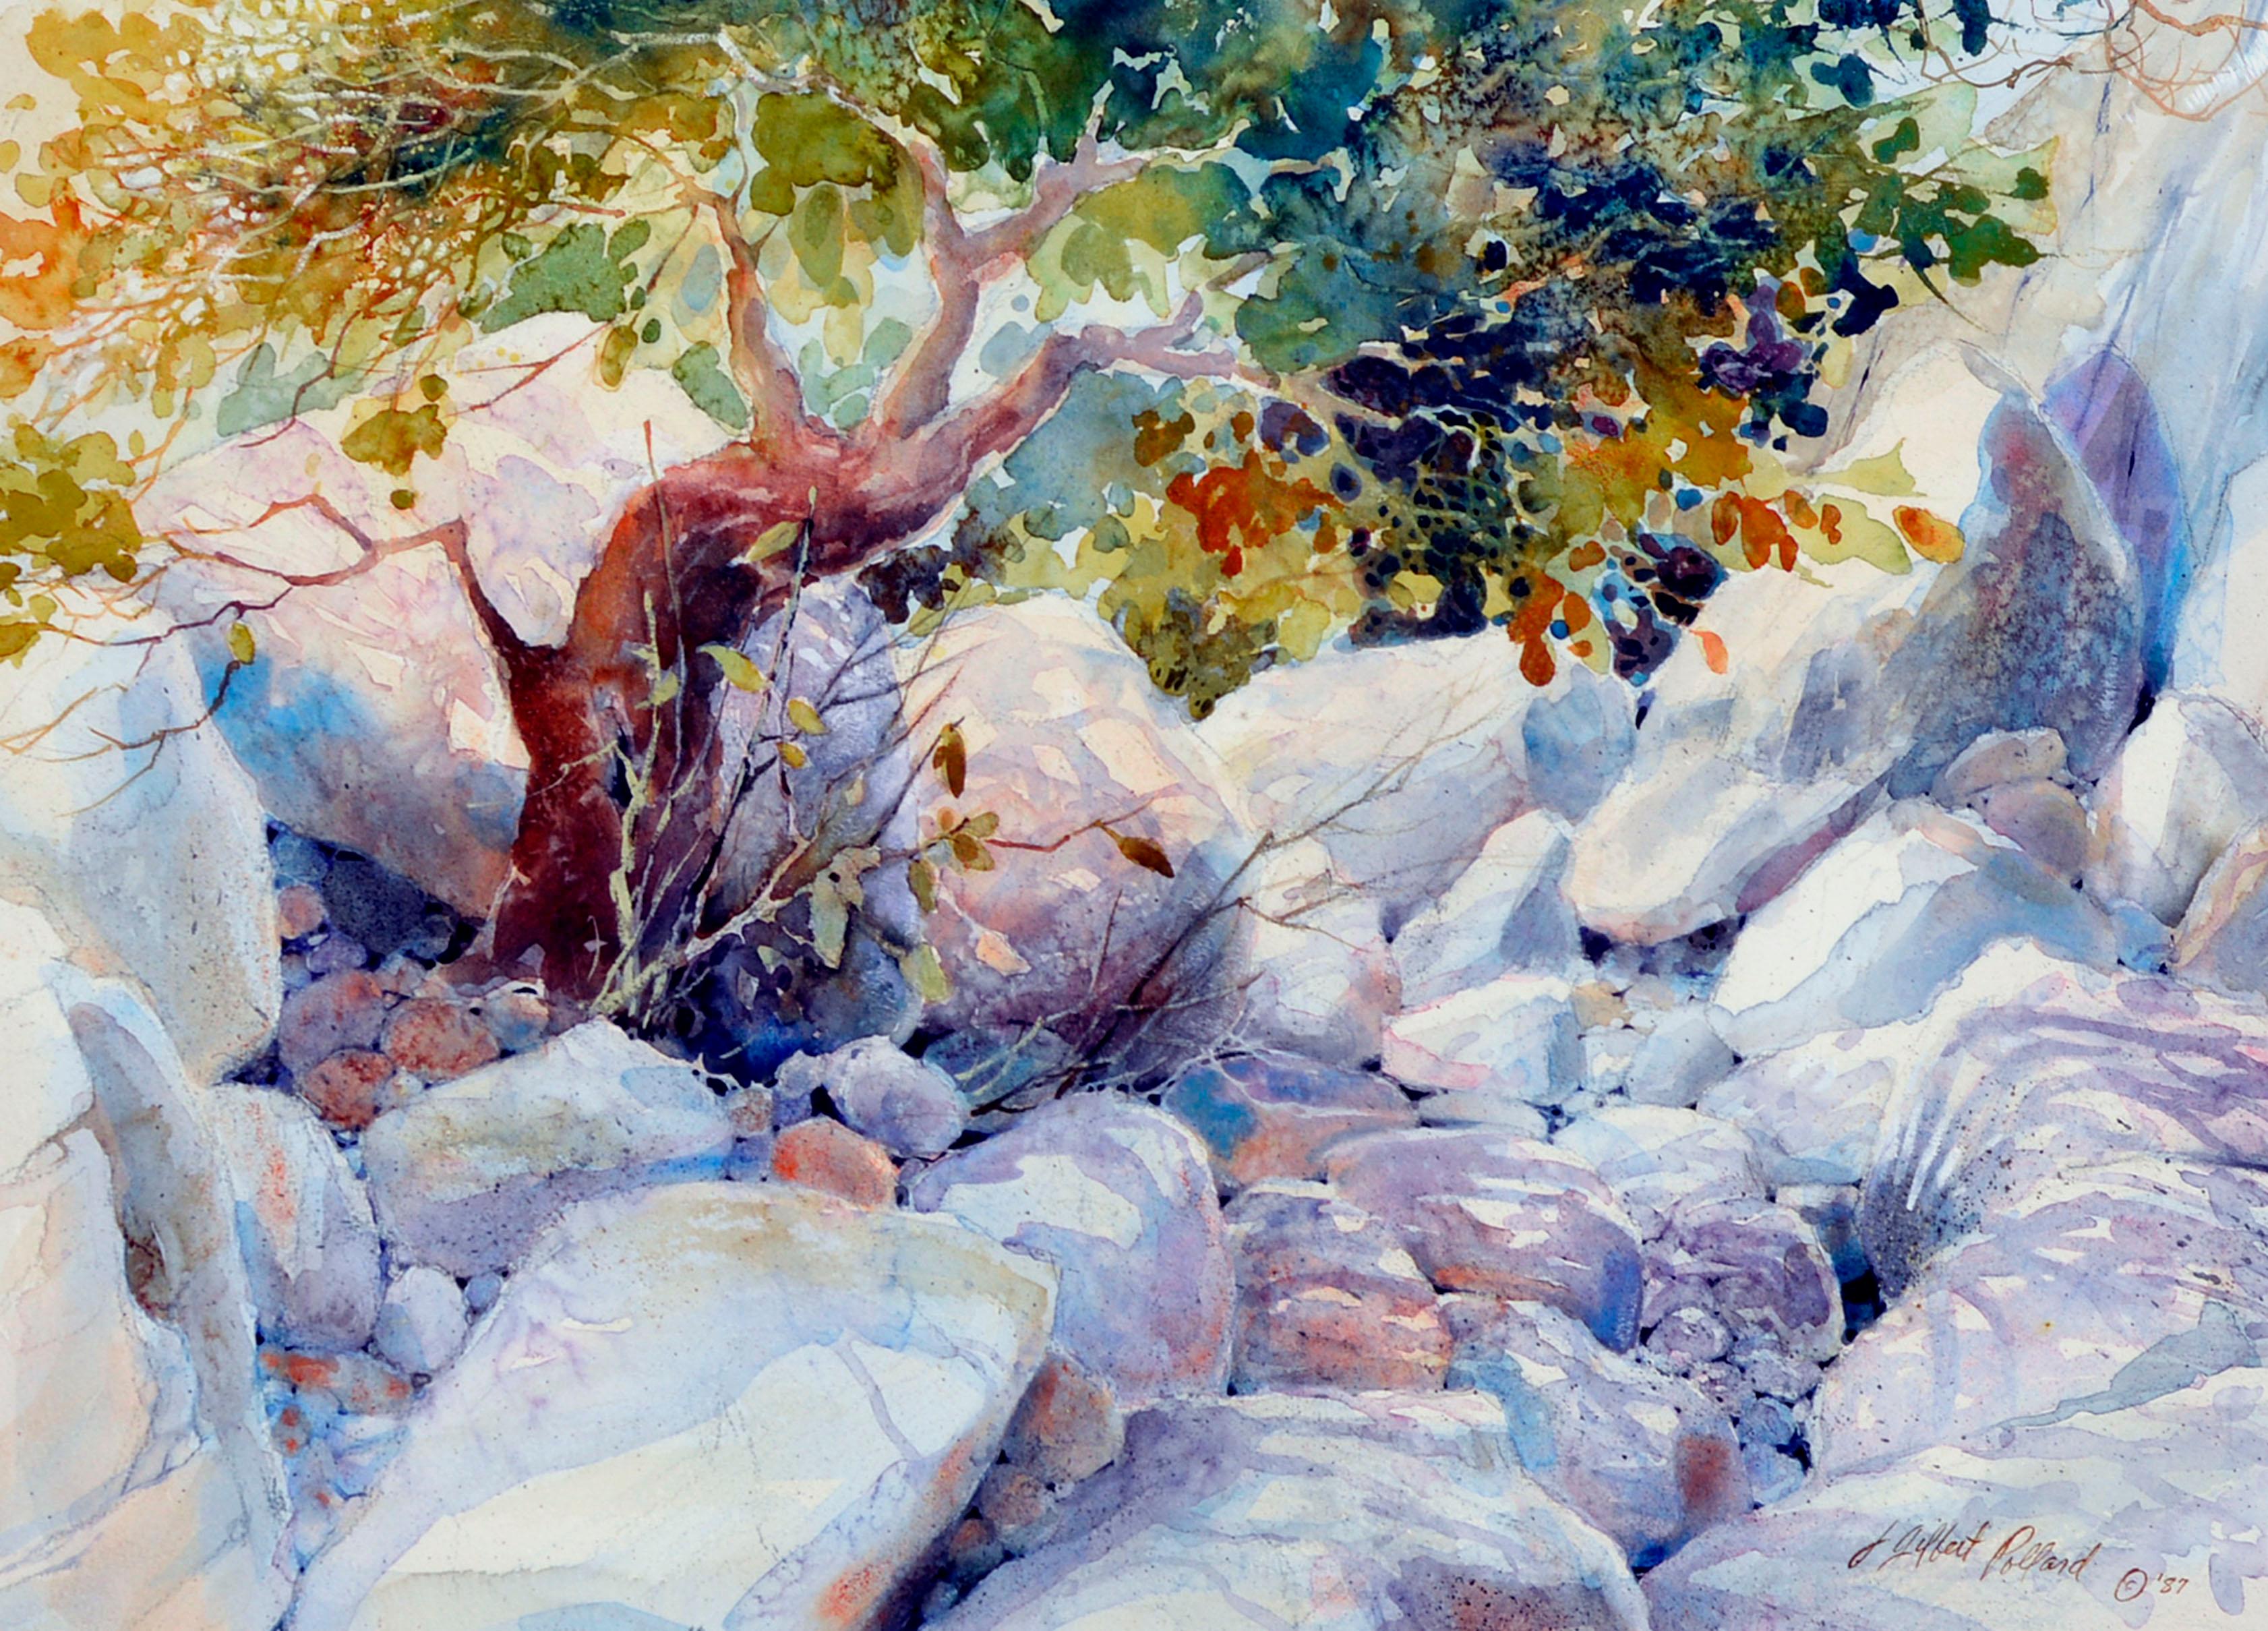 Aquarelle de paysage rocheux  - Art de Julie Gilbert Pollard